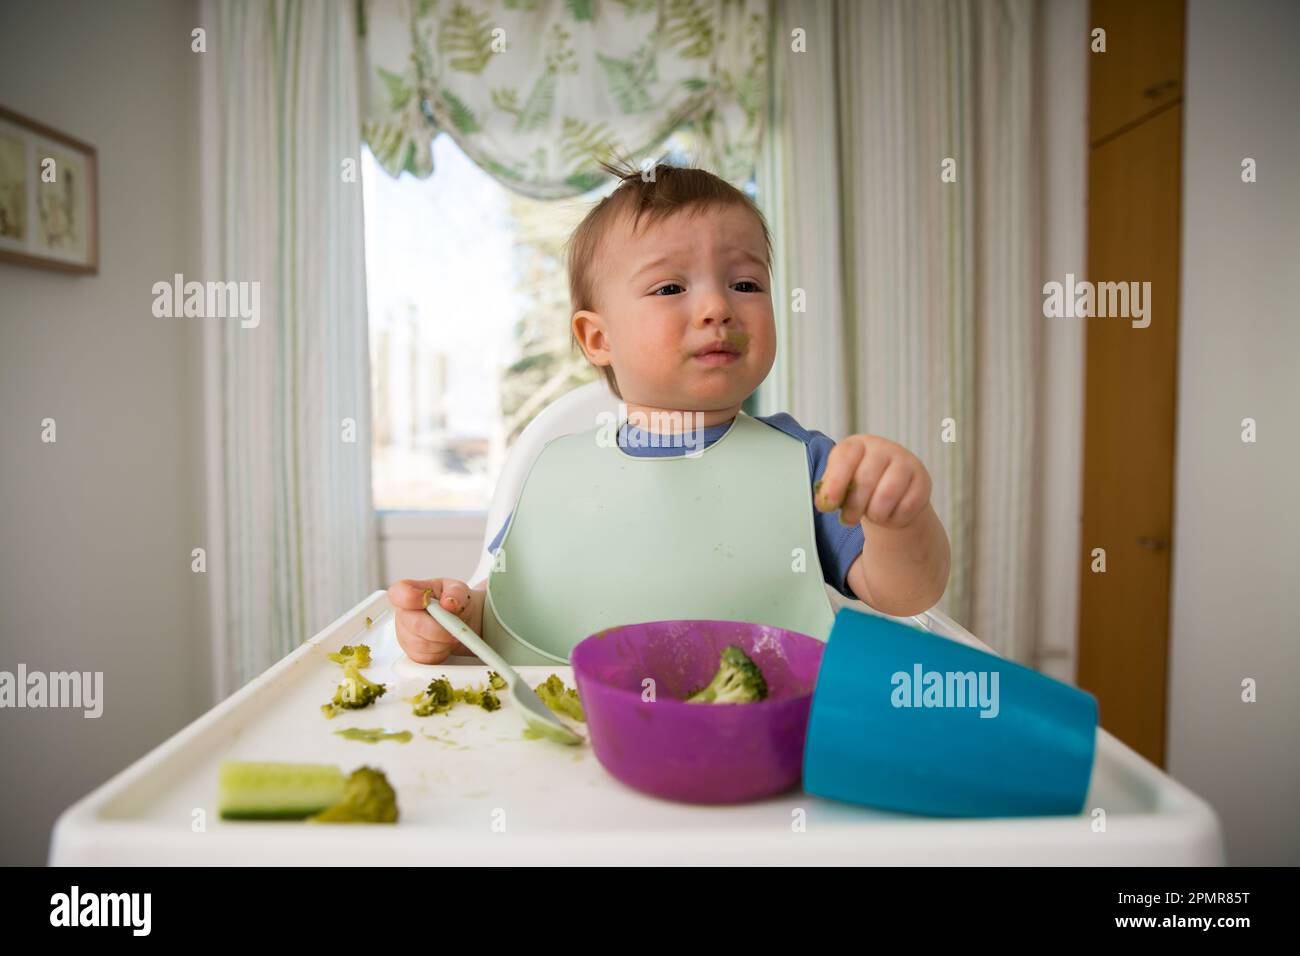 Bébé mignon mangeant avec la première nourriture solide, bébé assis dans une chaise haute. L'enfant ne veut pas manger, refuse de manger, se fait des visages. Intérieur de cuisine confortable. Banque D'Images